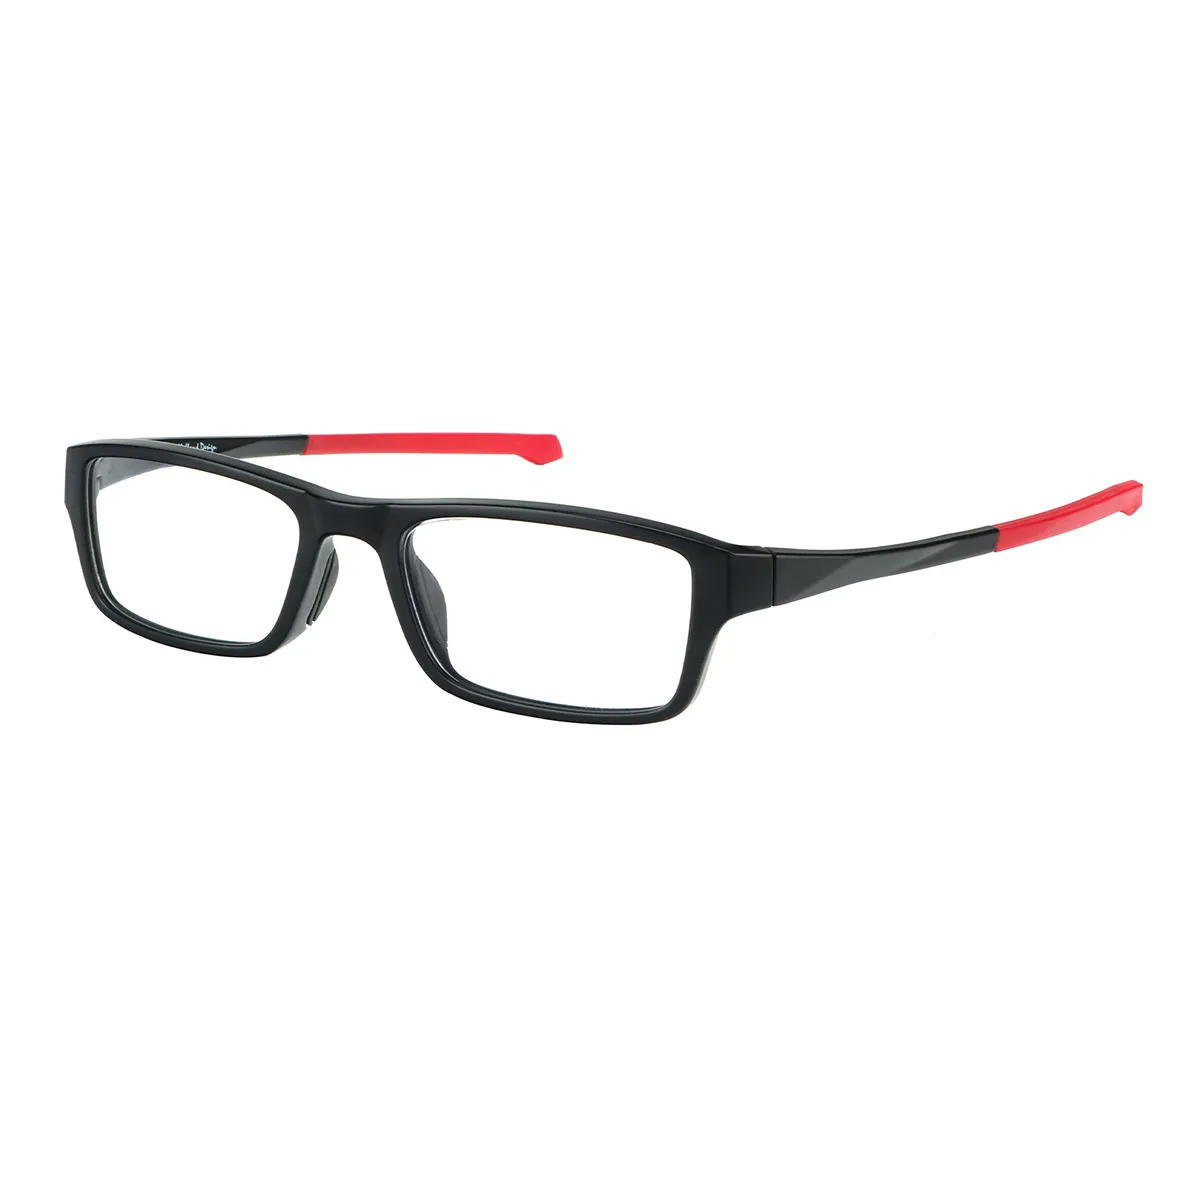 Sports Rectangle Black-Blue Eyeglasses for Women & Men